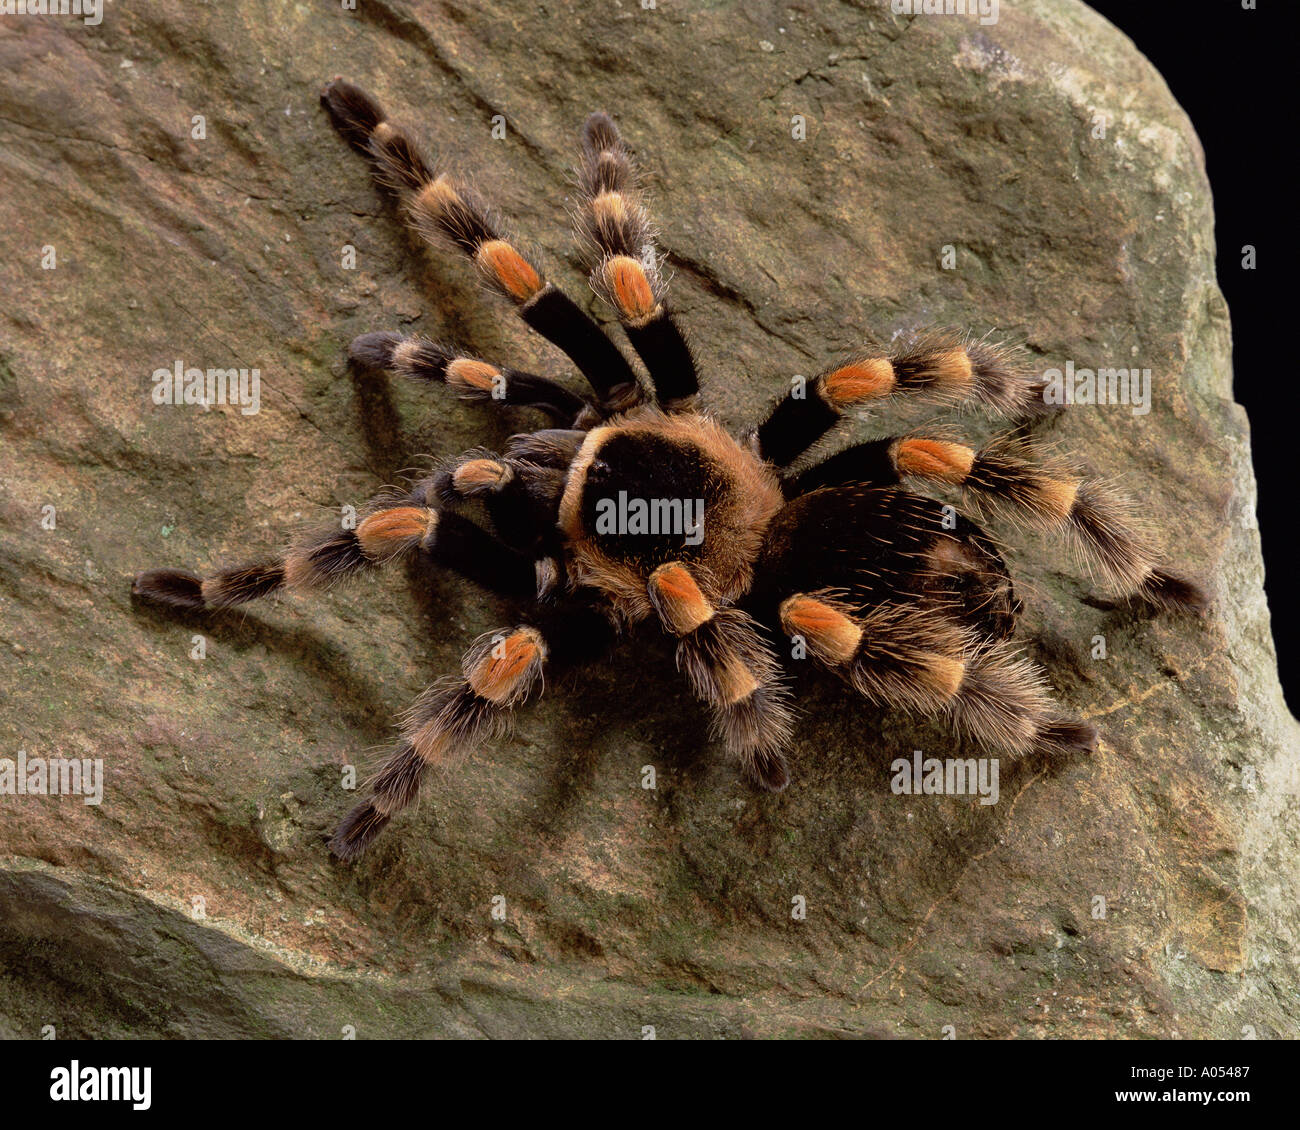 spider Stock Photo